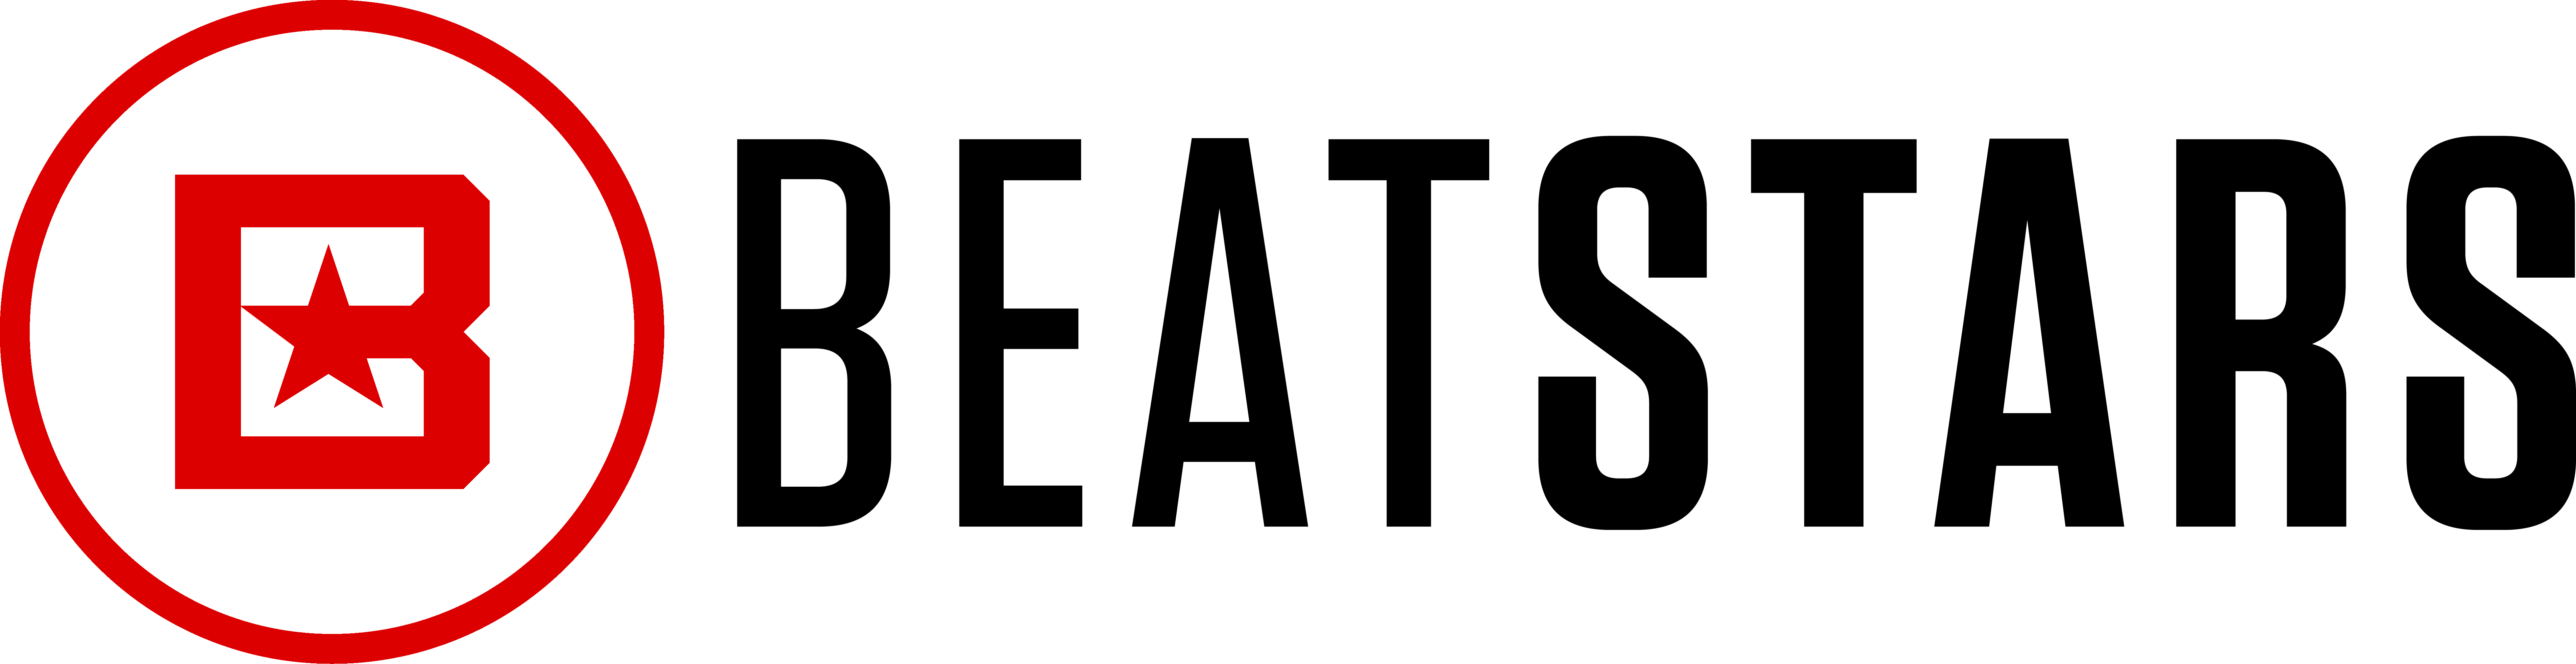 beatstars-full-logo